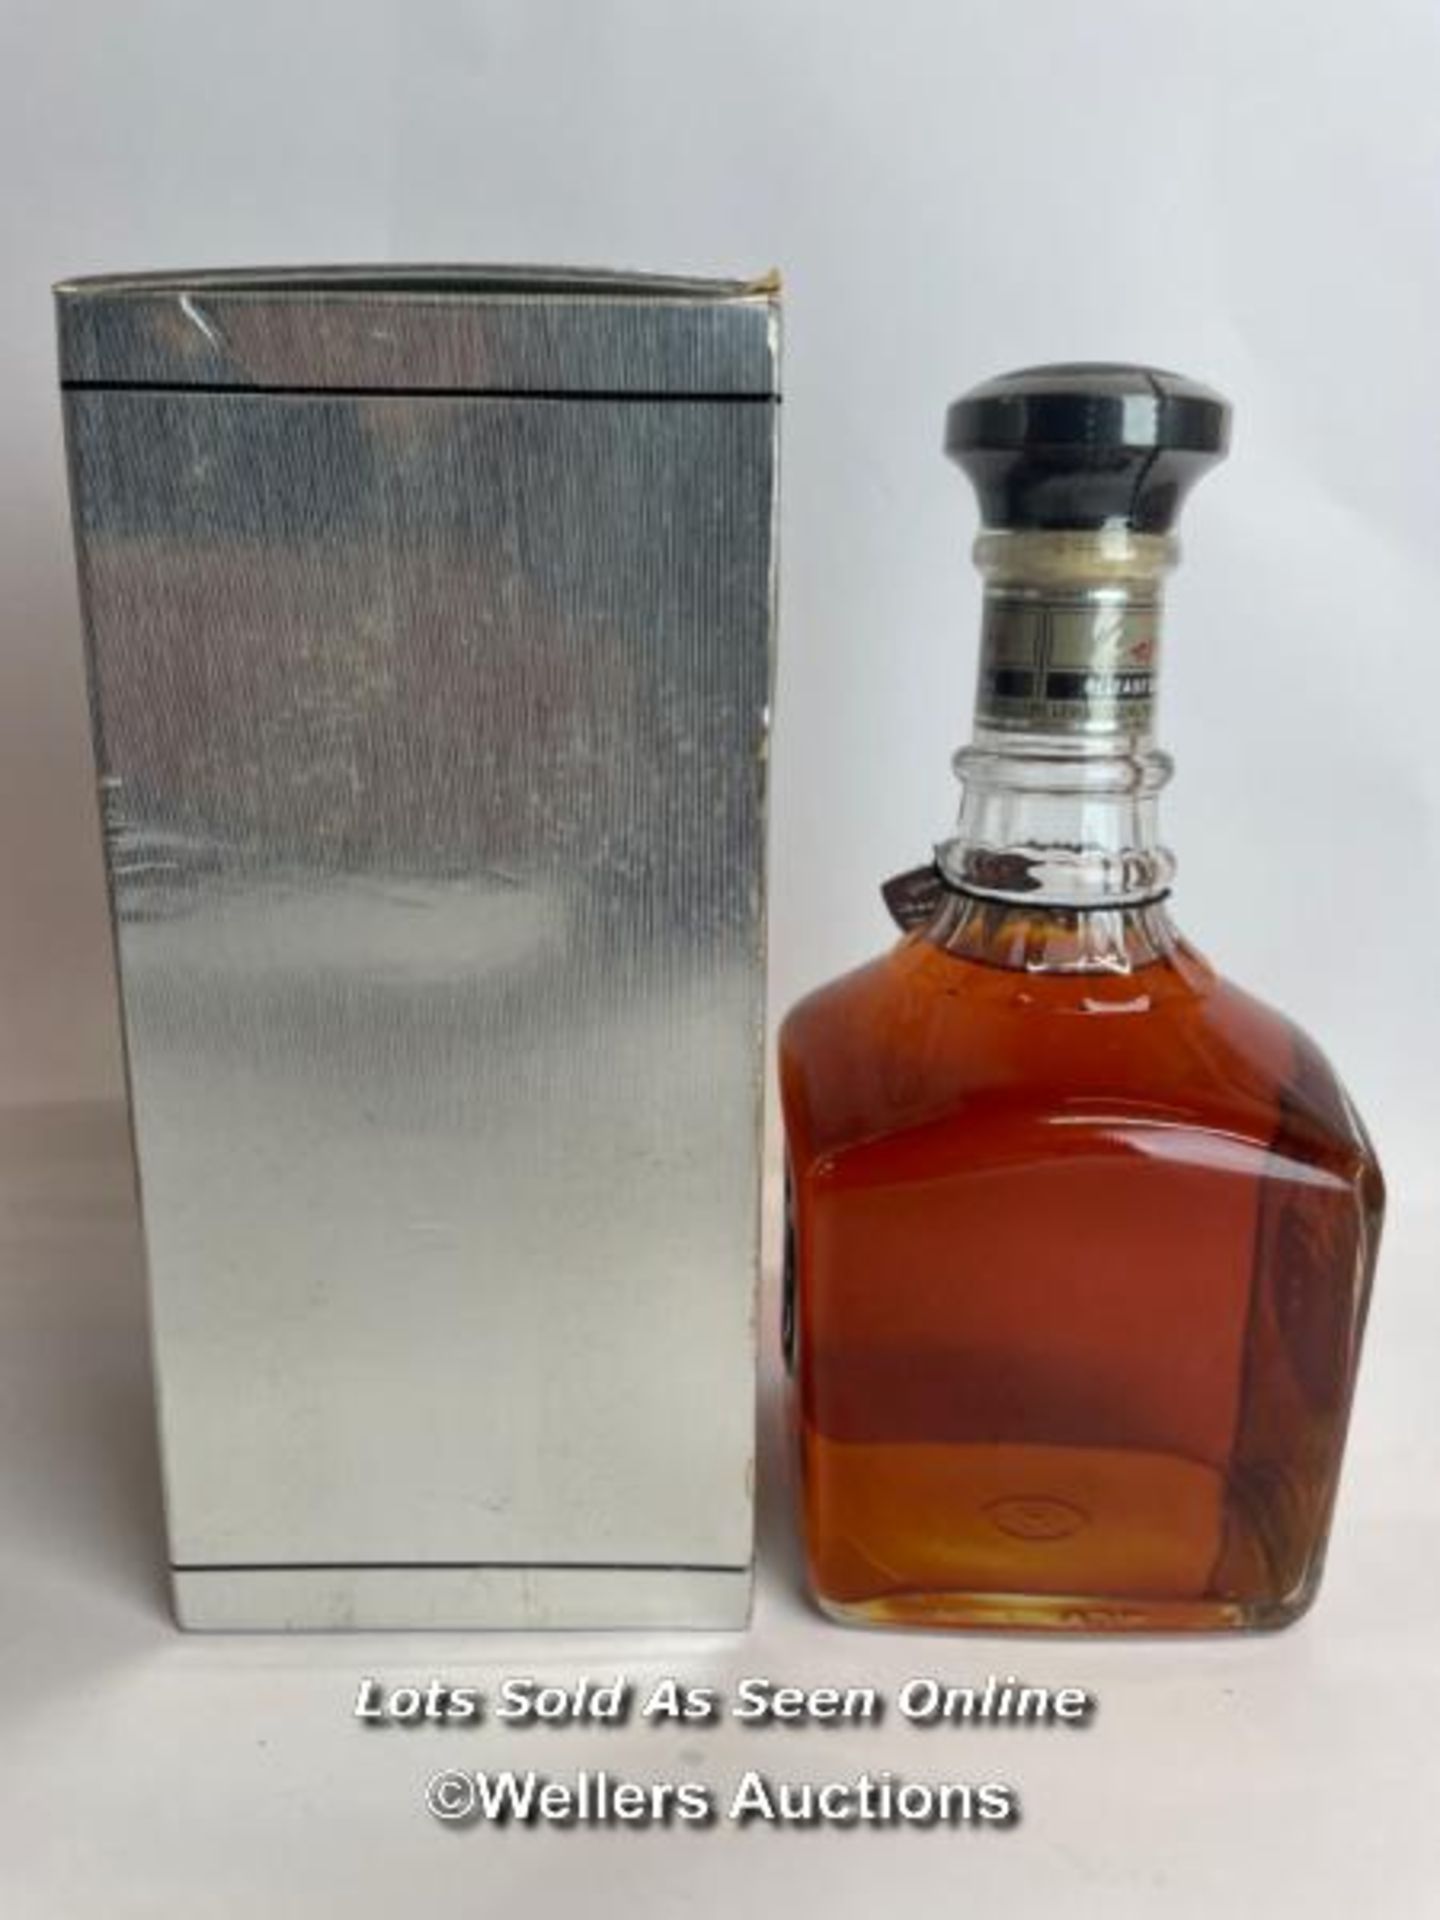 Jack Daniels Silver Select Single Barrel Tennessee Whiskey, Release date: 11-03-99, Barrek no: 9- - Bild 2 aus 8